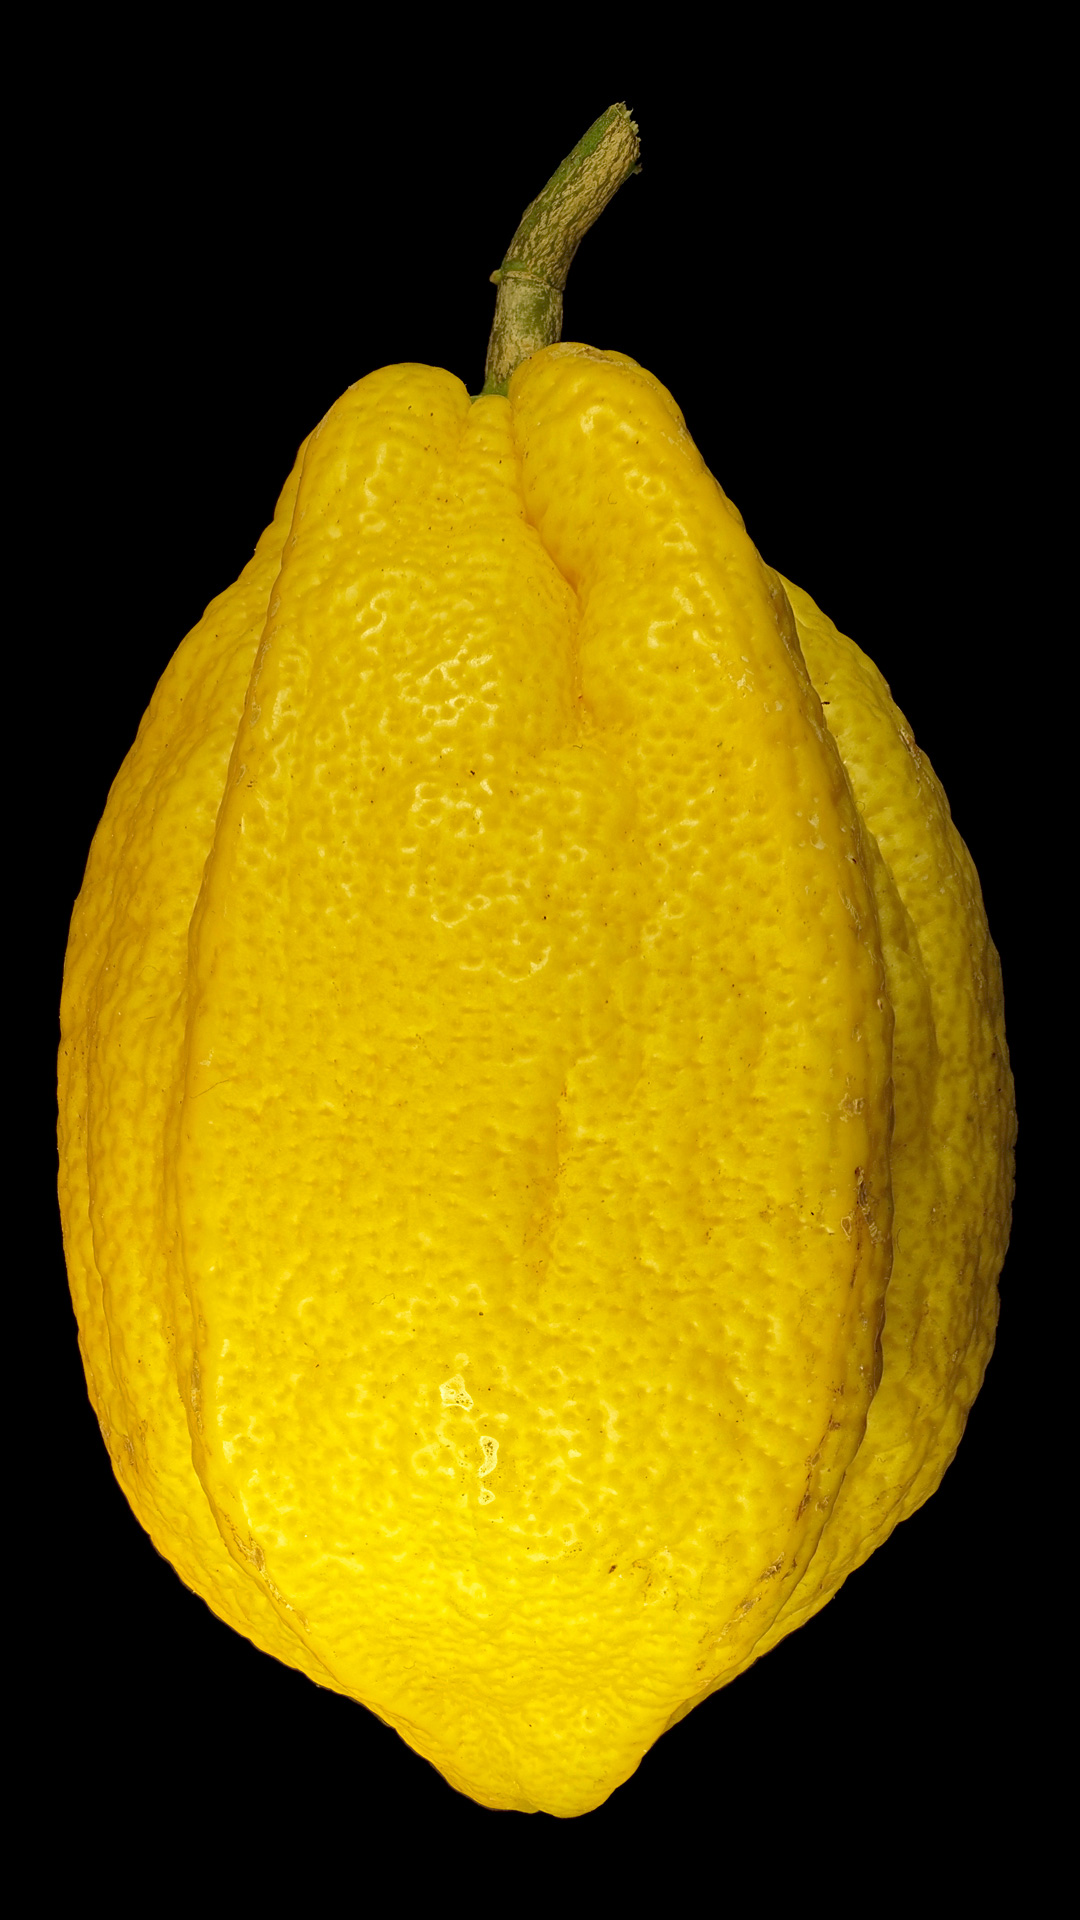 Die Bizarre Zitrone: Citrus × limon ‚Bizzarro‘